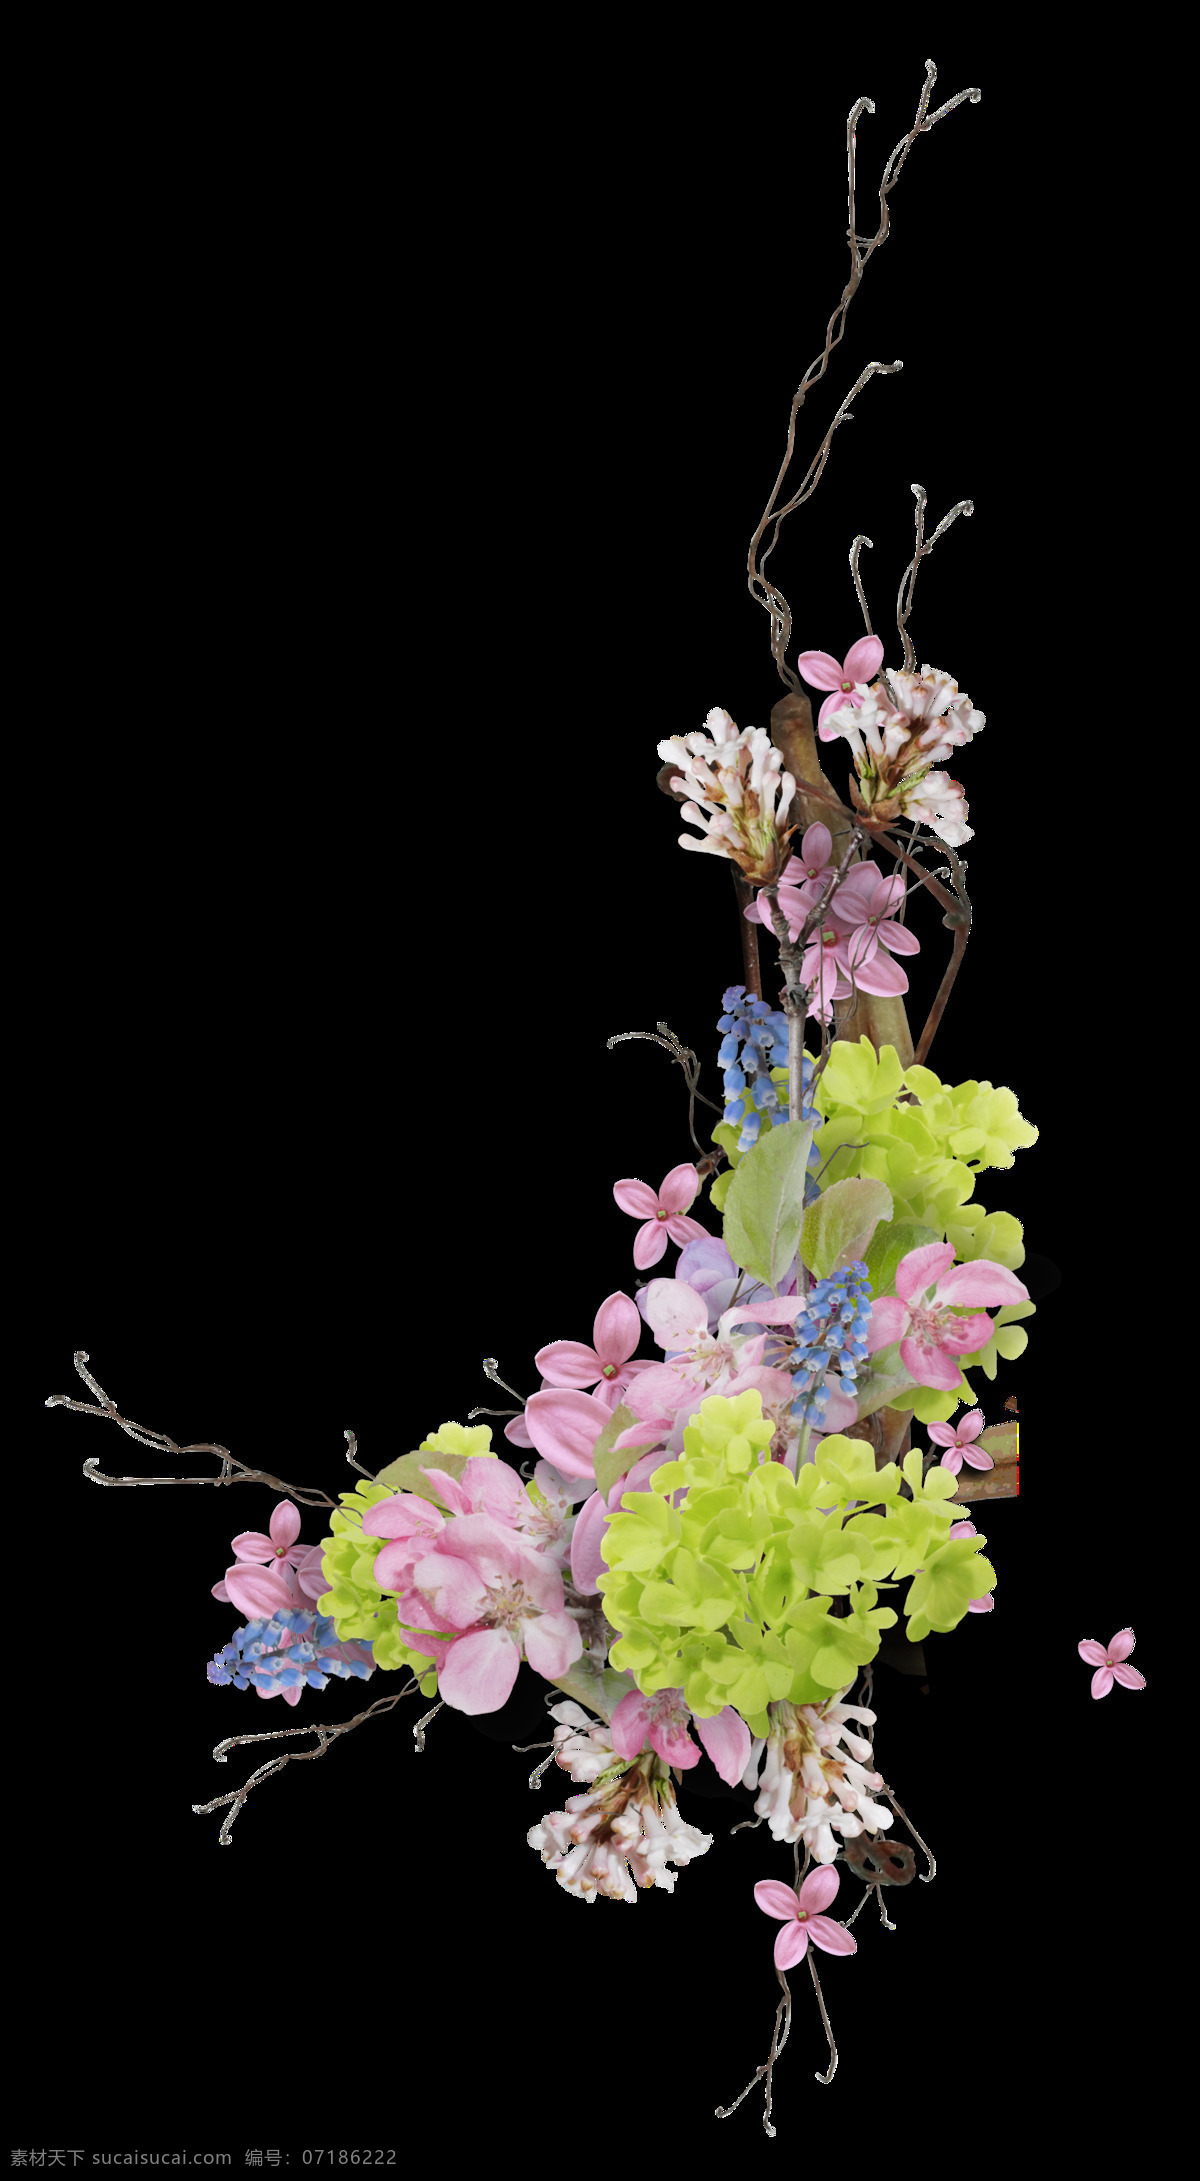 手绘 茂盛 锦 束 繁花 透明 植物 绿叶 花朵 繁多 透明素材 免扣素材 装饰图片